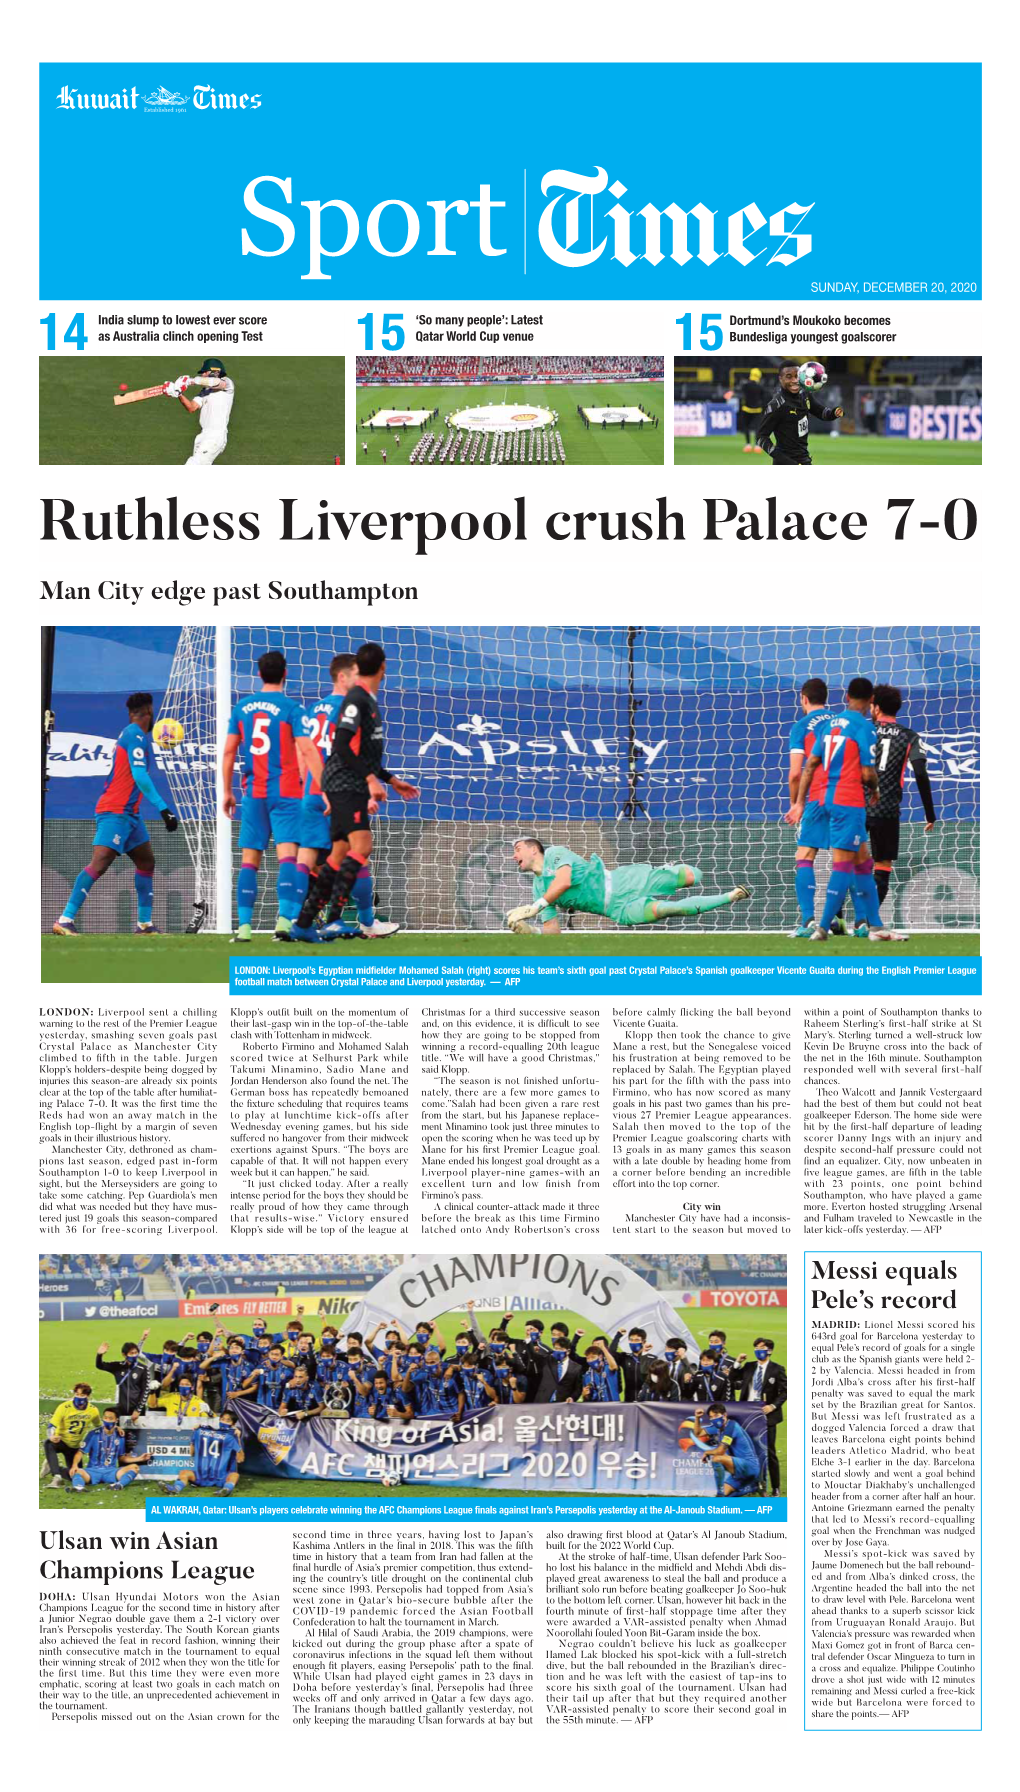 Ruthless Liverpool Crush Palace 7-0 Man City Edge Past Southampton